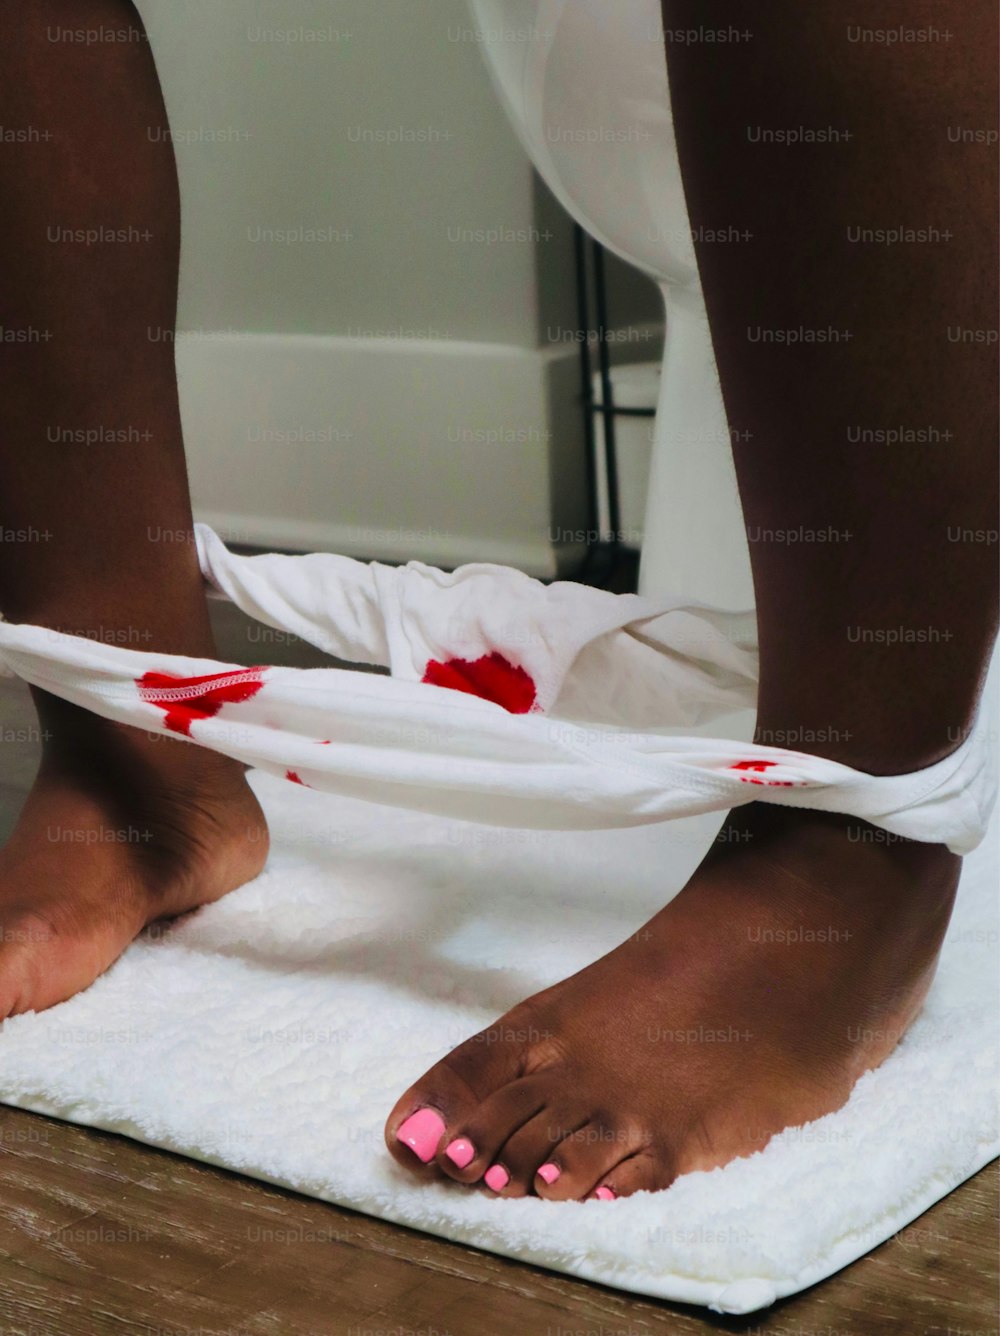 eine Person mit Blut an den Füßen auf einem Handtuch